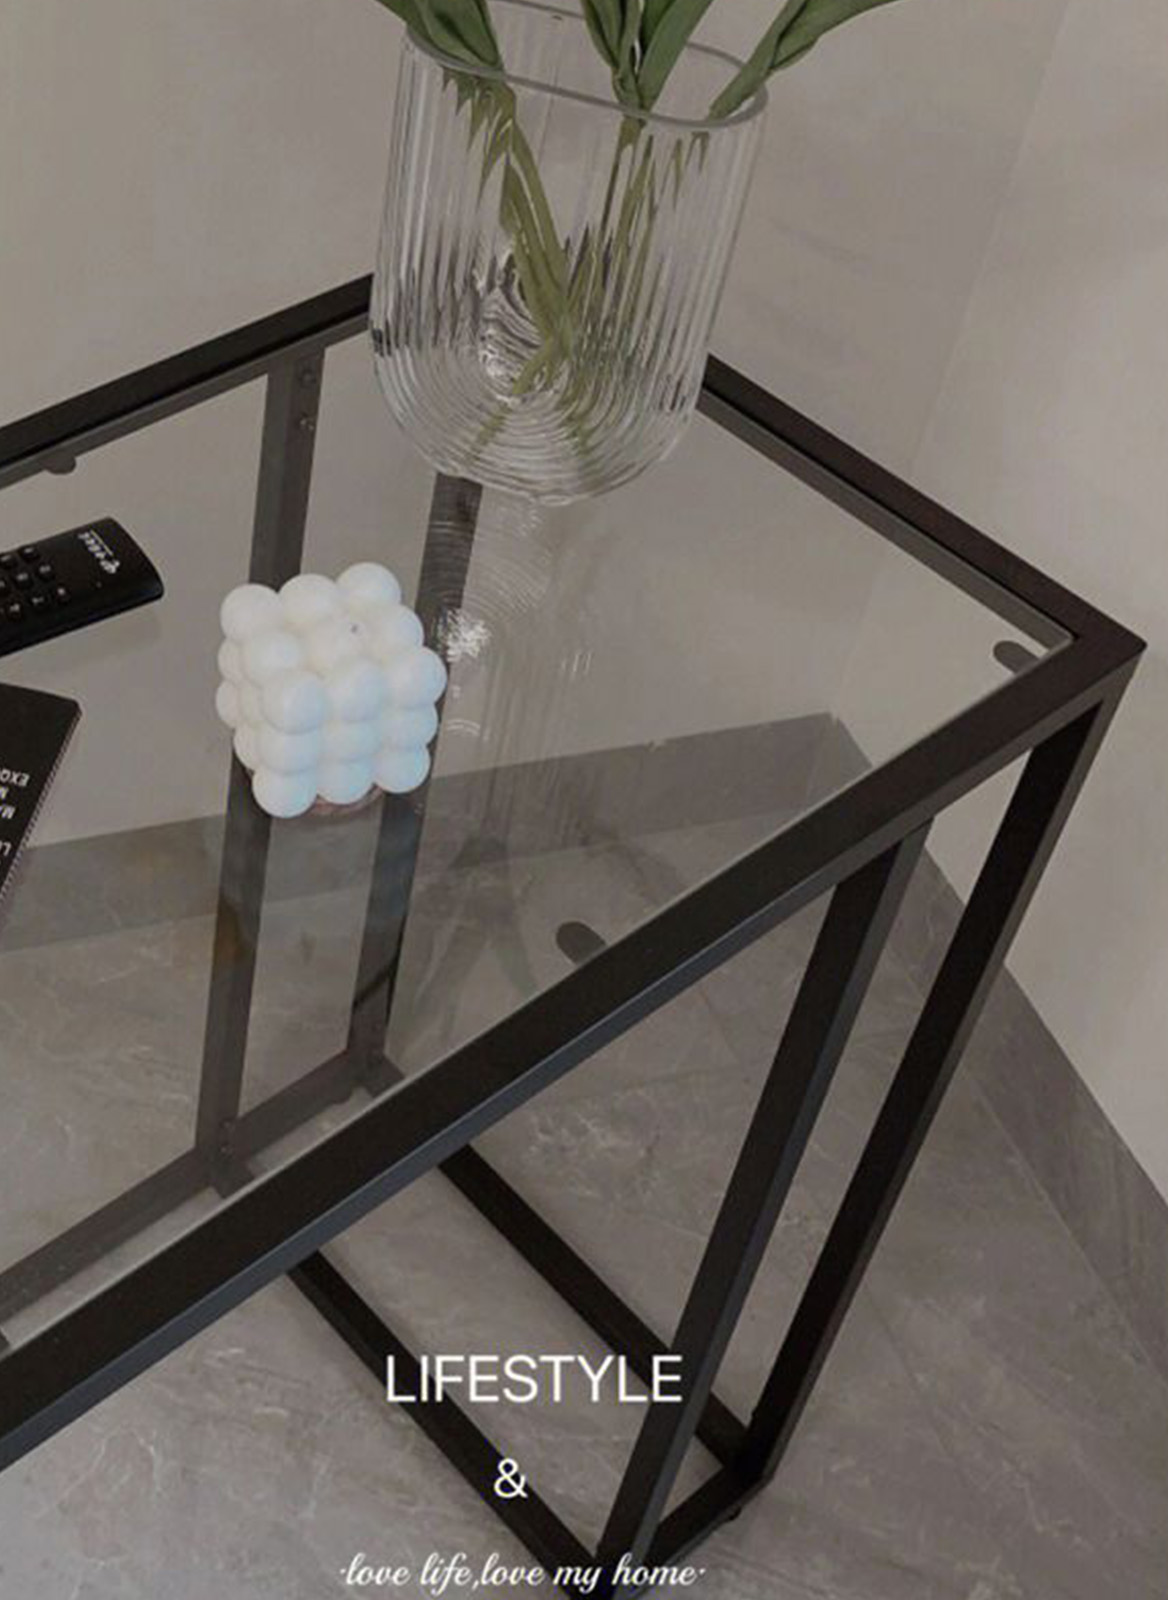 INS نمط شقة صغيرة شفافة الزجاج المقسى طاولة القهوة / أريكة طاولة جانبية معدنية 35 * 55 * 65cm